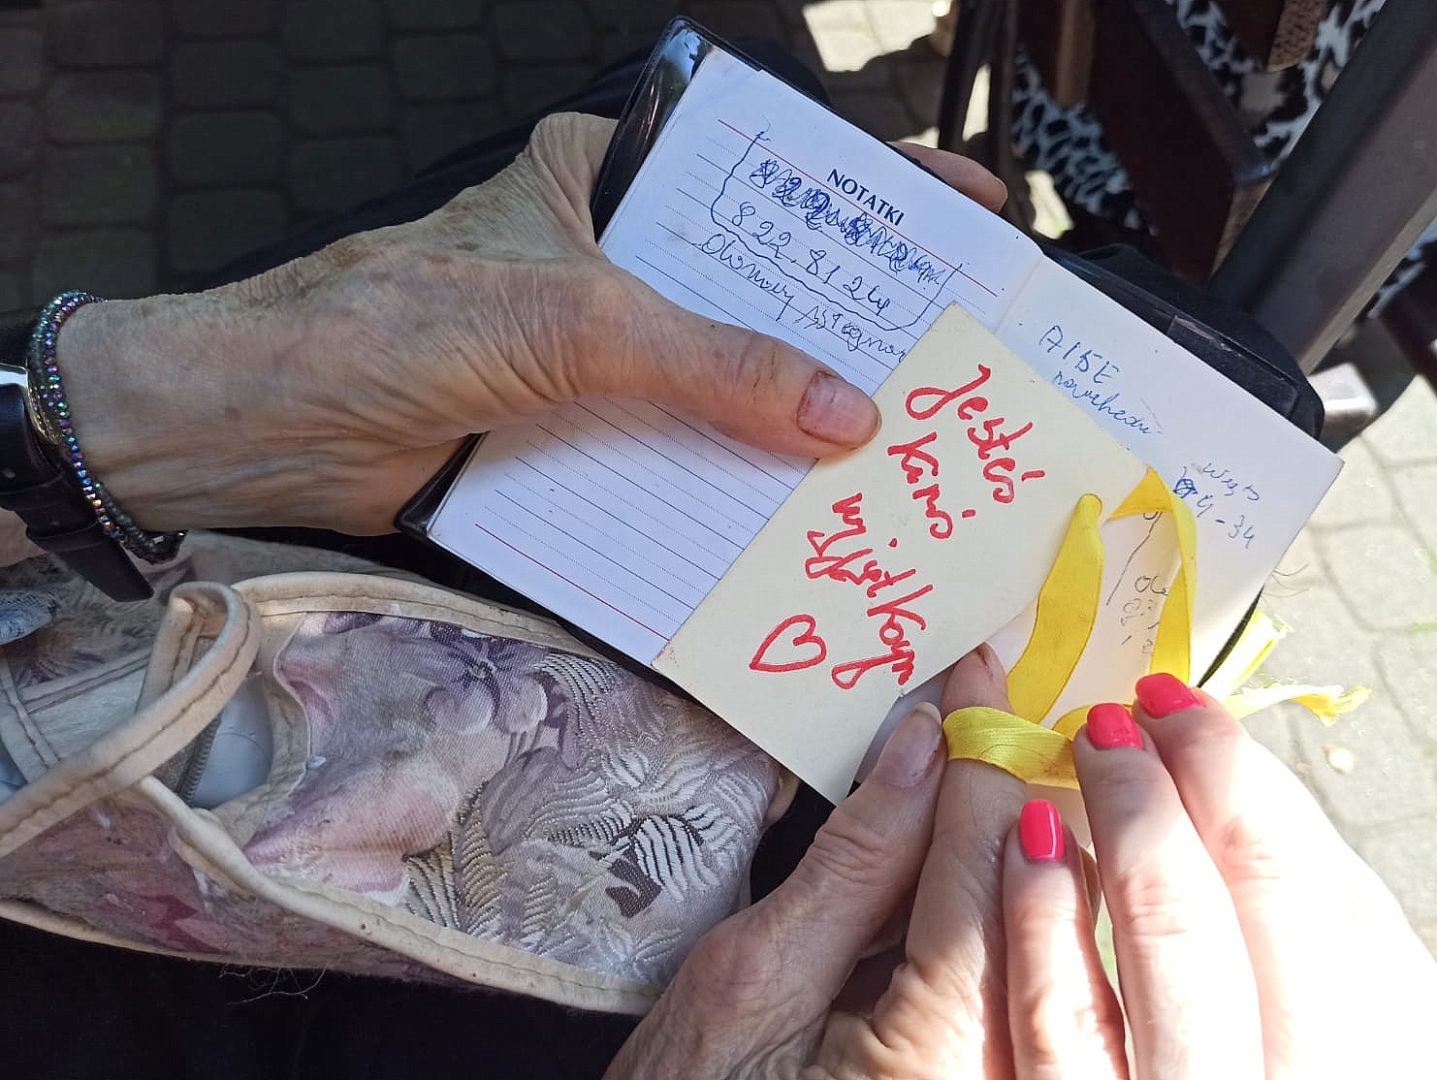 Na zdjęciu jest rozłożony mały kalendarz książkowy. Jest on trzymany w rękach starszej kobiety. Jej prawej dłoni dotyka dłoń młodej koboety, która jest wolontariuszem i pomaga starszej kobiecie. Na środku kalnedarza przyklejona jest karteczka z napisem "Jesteś kimś wyjątkowym" wraz z dorysowanym symbolem serca.